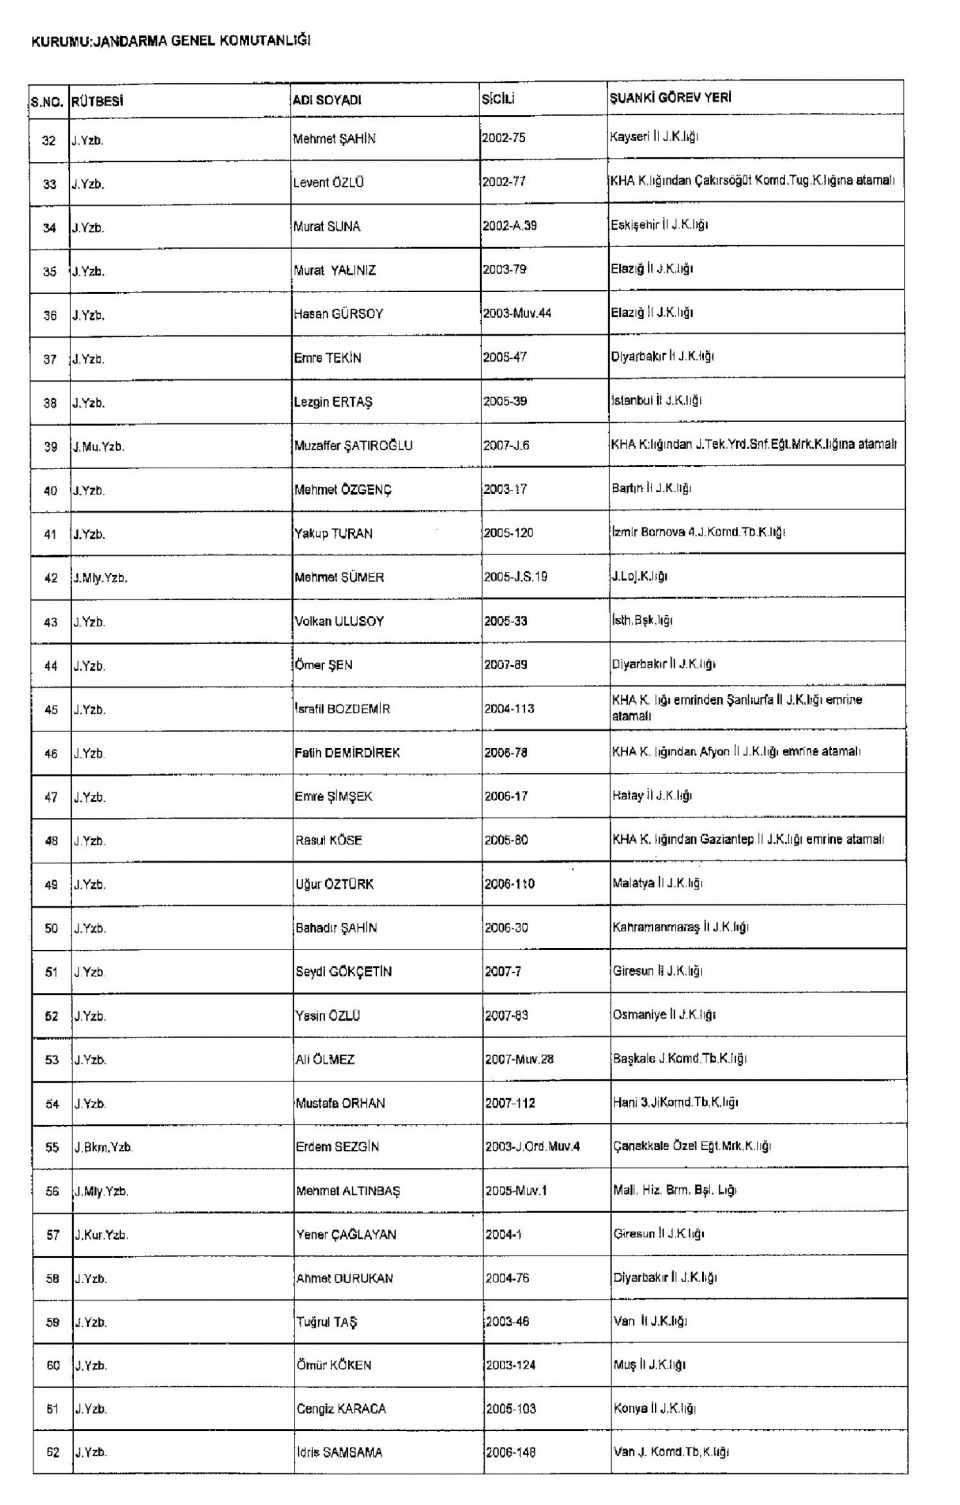 Kamudan ihraç edilenlerin isimleri 46